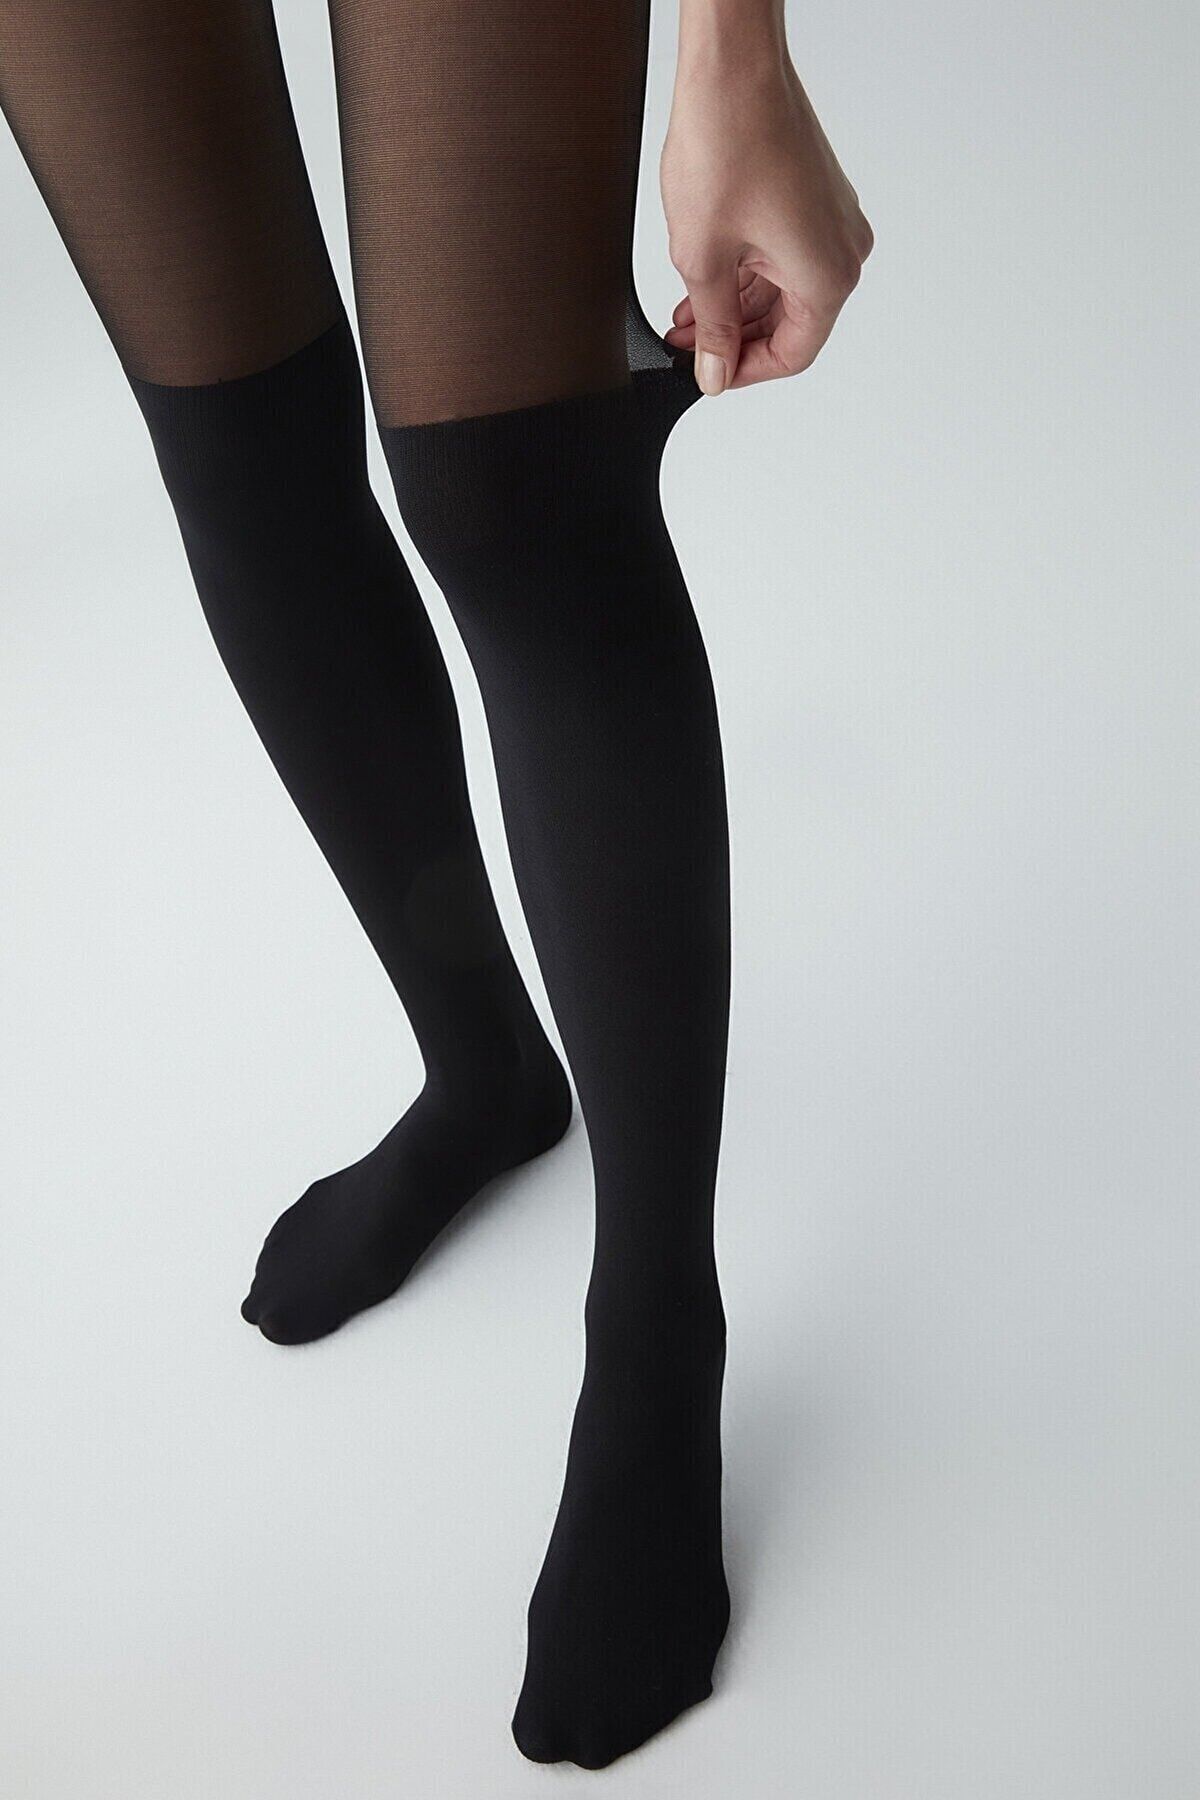 VINIA PENTİ Desenli Külotlu Çorap Çizme Çorabı 20 Denye (siyah)